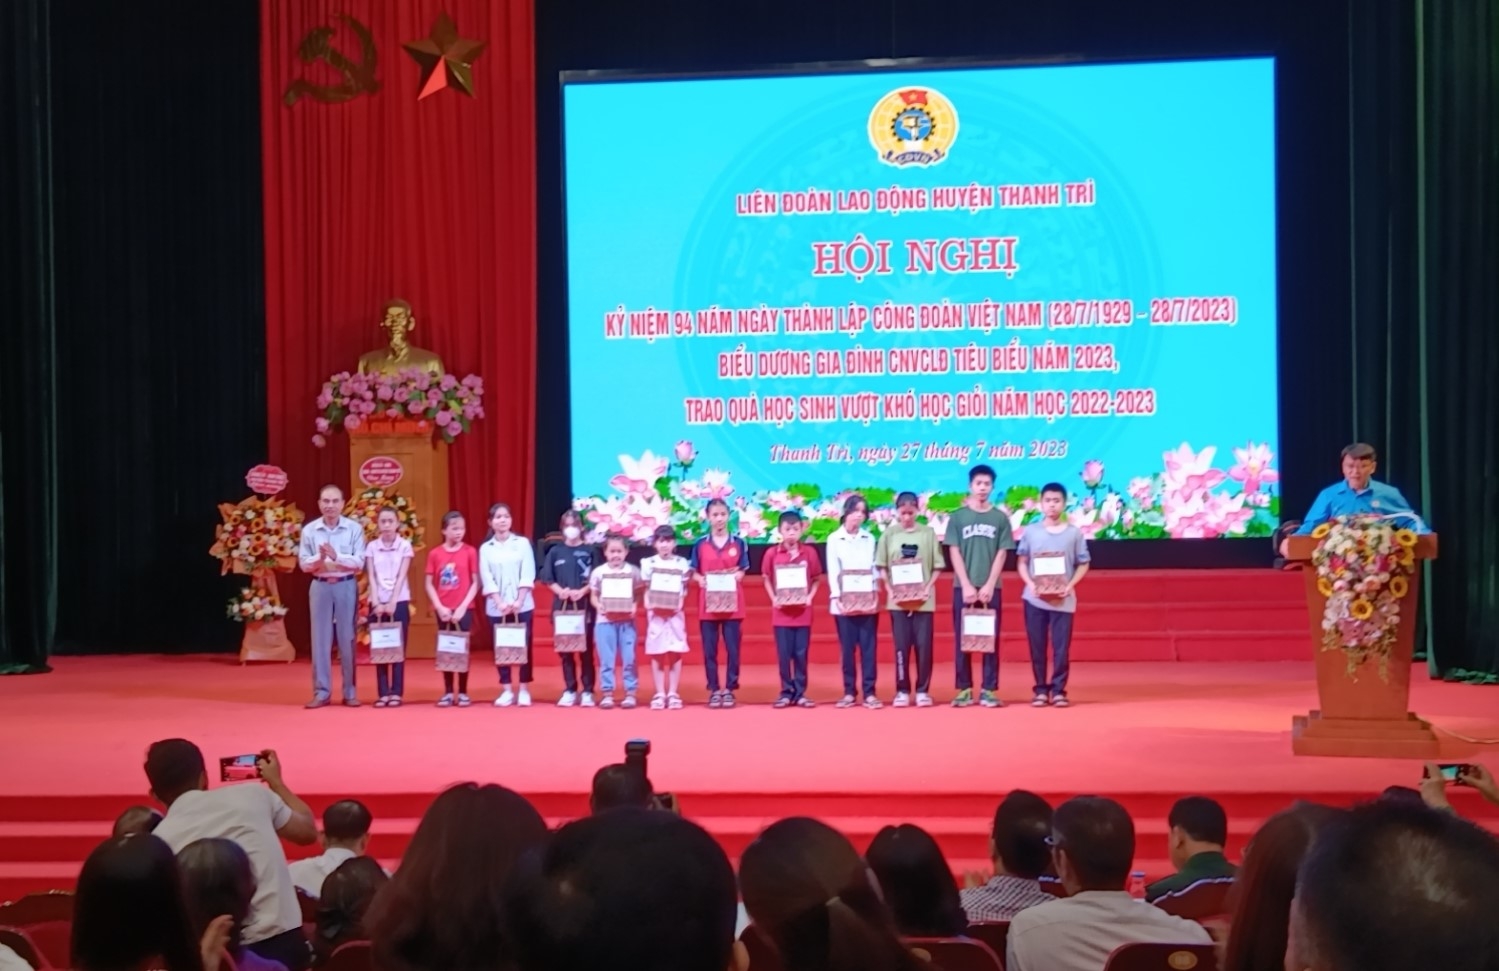 LĐLĐ huyện Thanh Trì: Kỷ niệm 94 năm Ngày thành lập Công đoàn Việt Nam